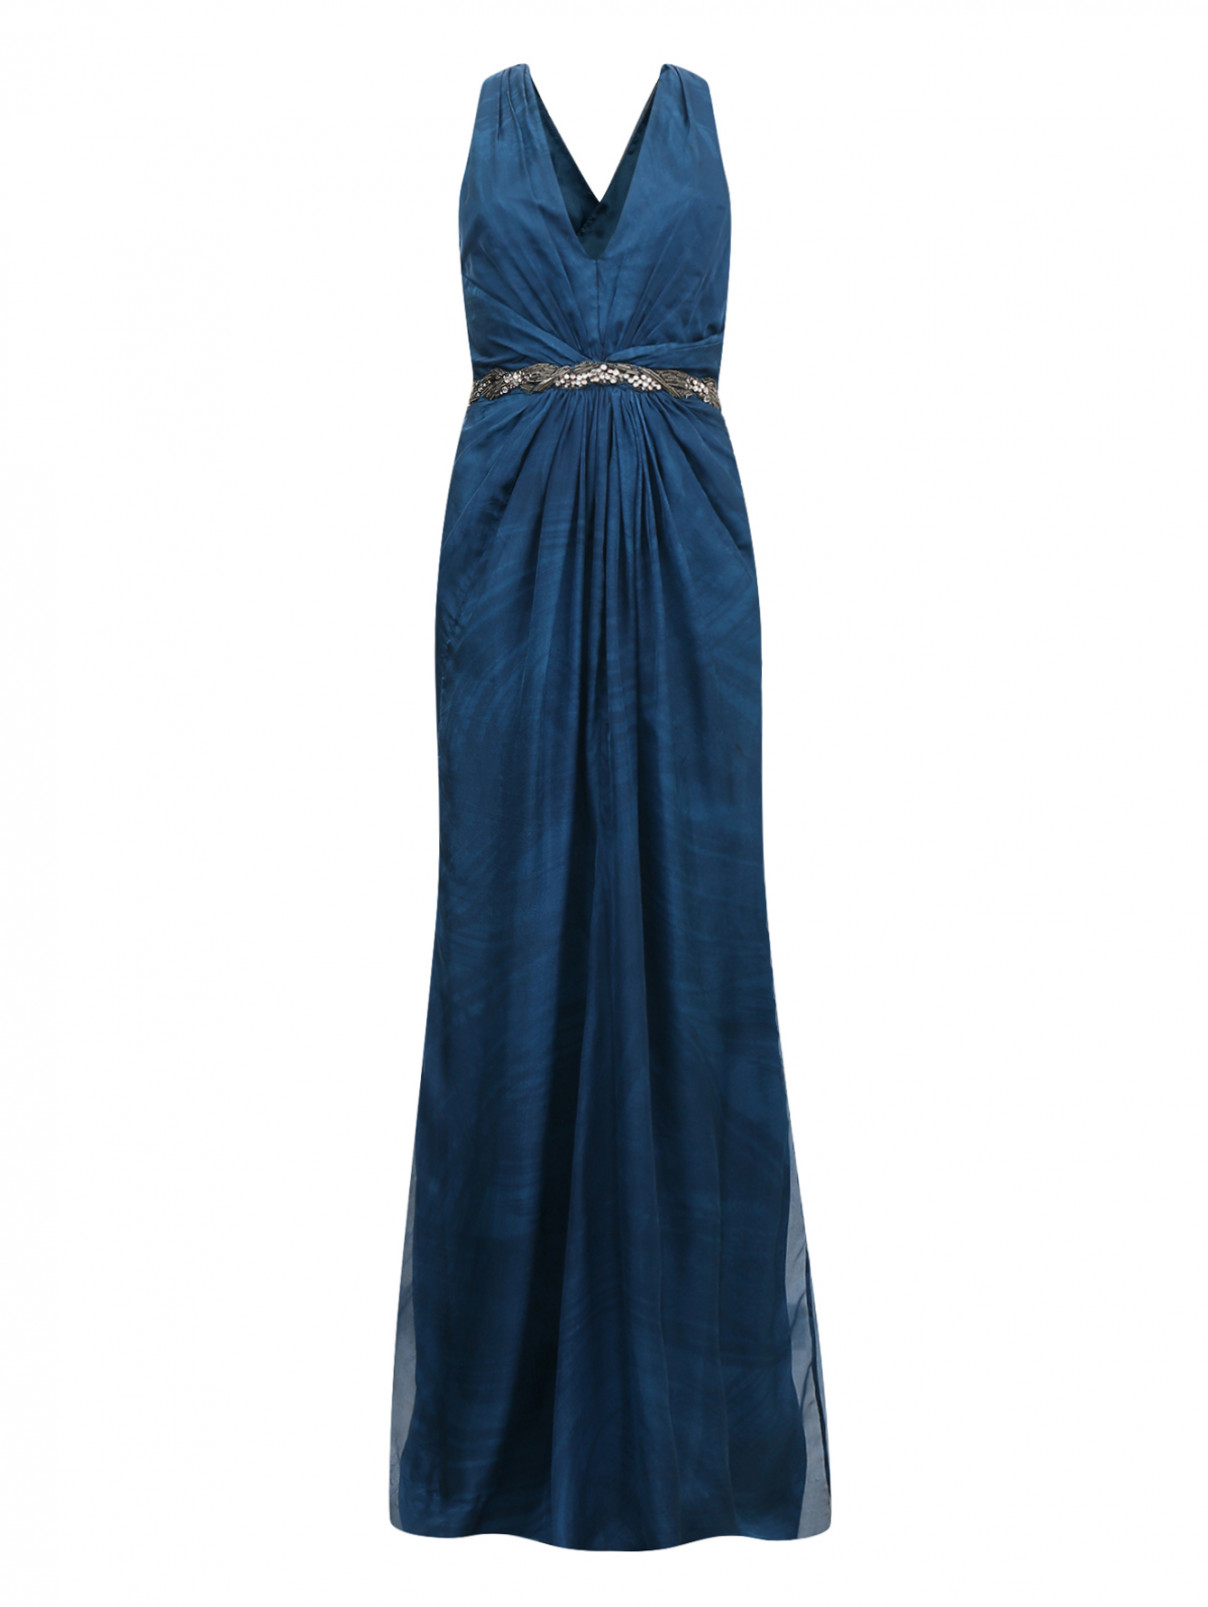 Платье из шелка декорированное стразами и кристаллами Jenny Packham  –  Общий вид  – Цвет:  Синий